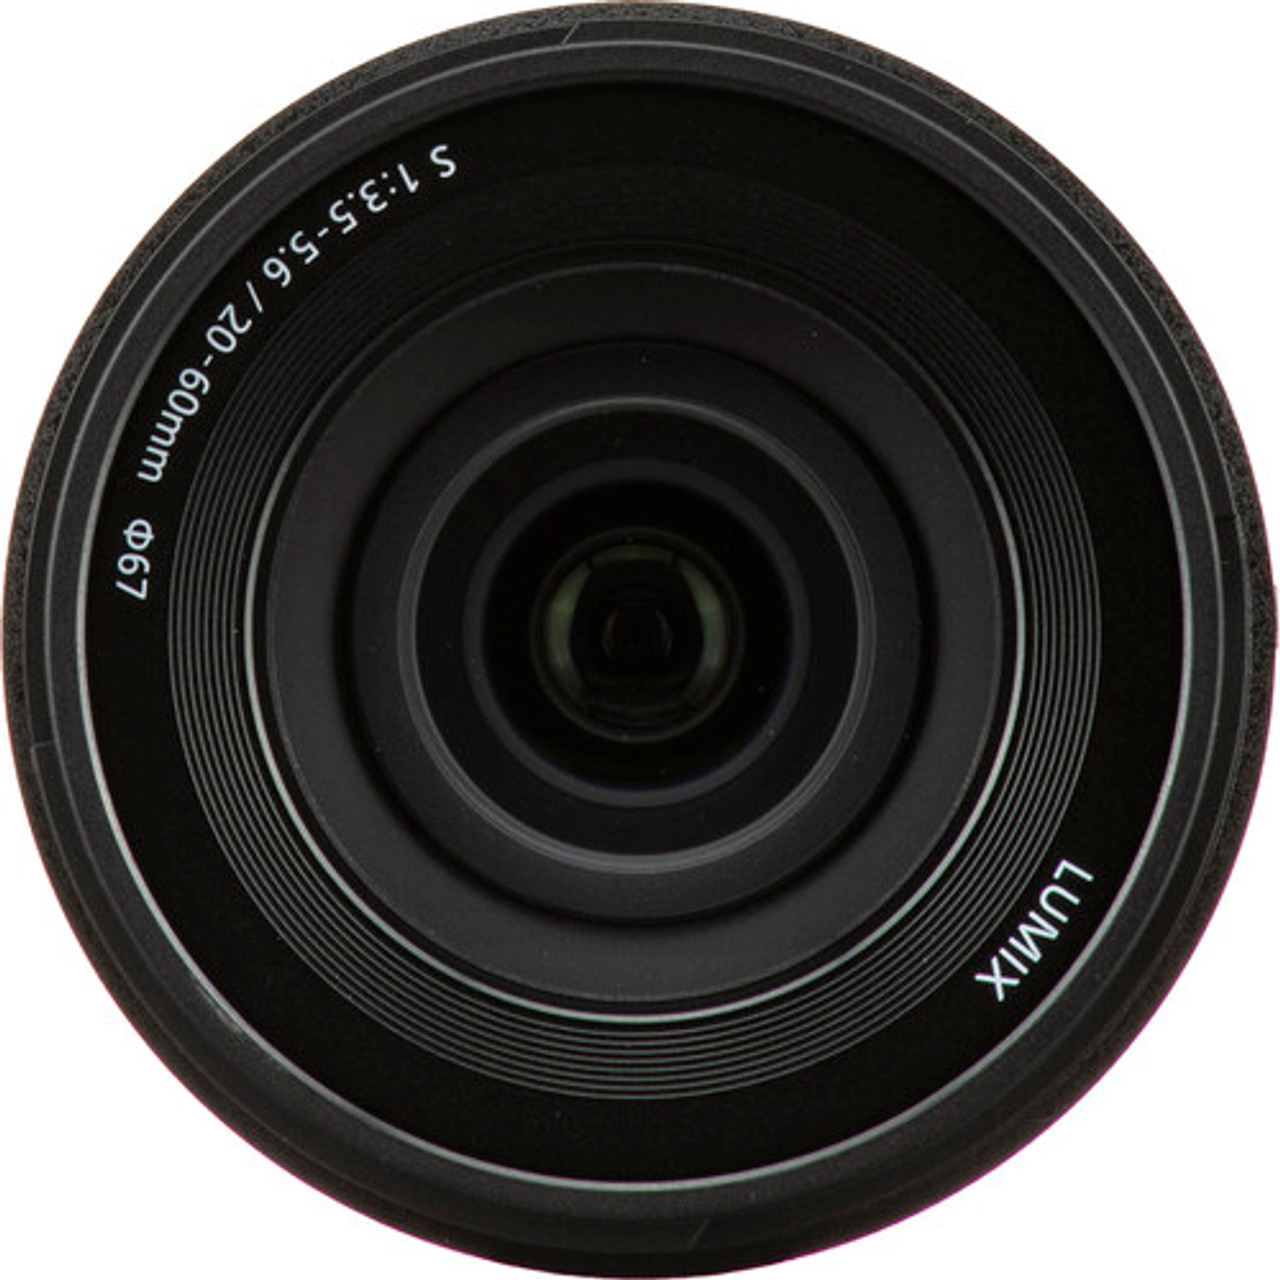 Panasonic Lumix S5 II Mirrorless Camera with 20-60mm and 50mm